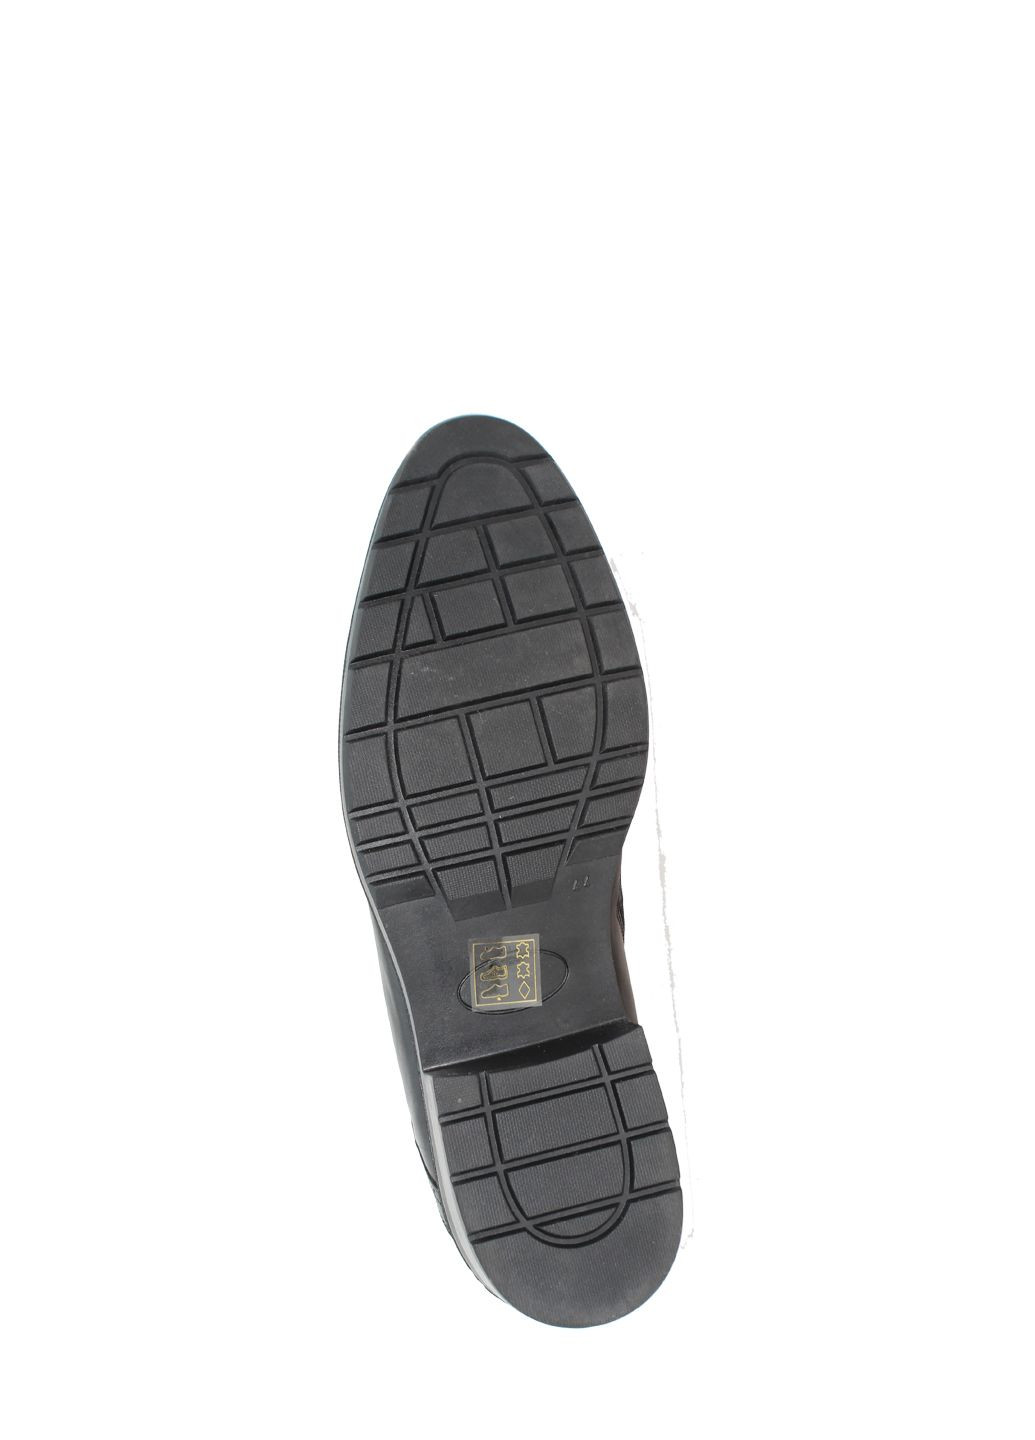 Черные зимние ботинки 51912 черный Rabano